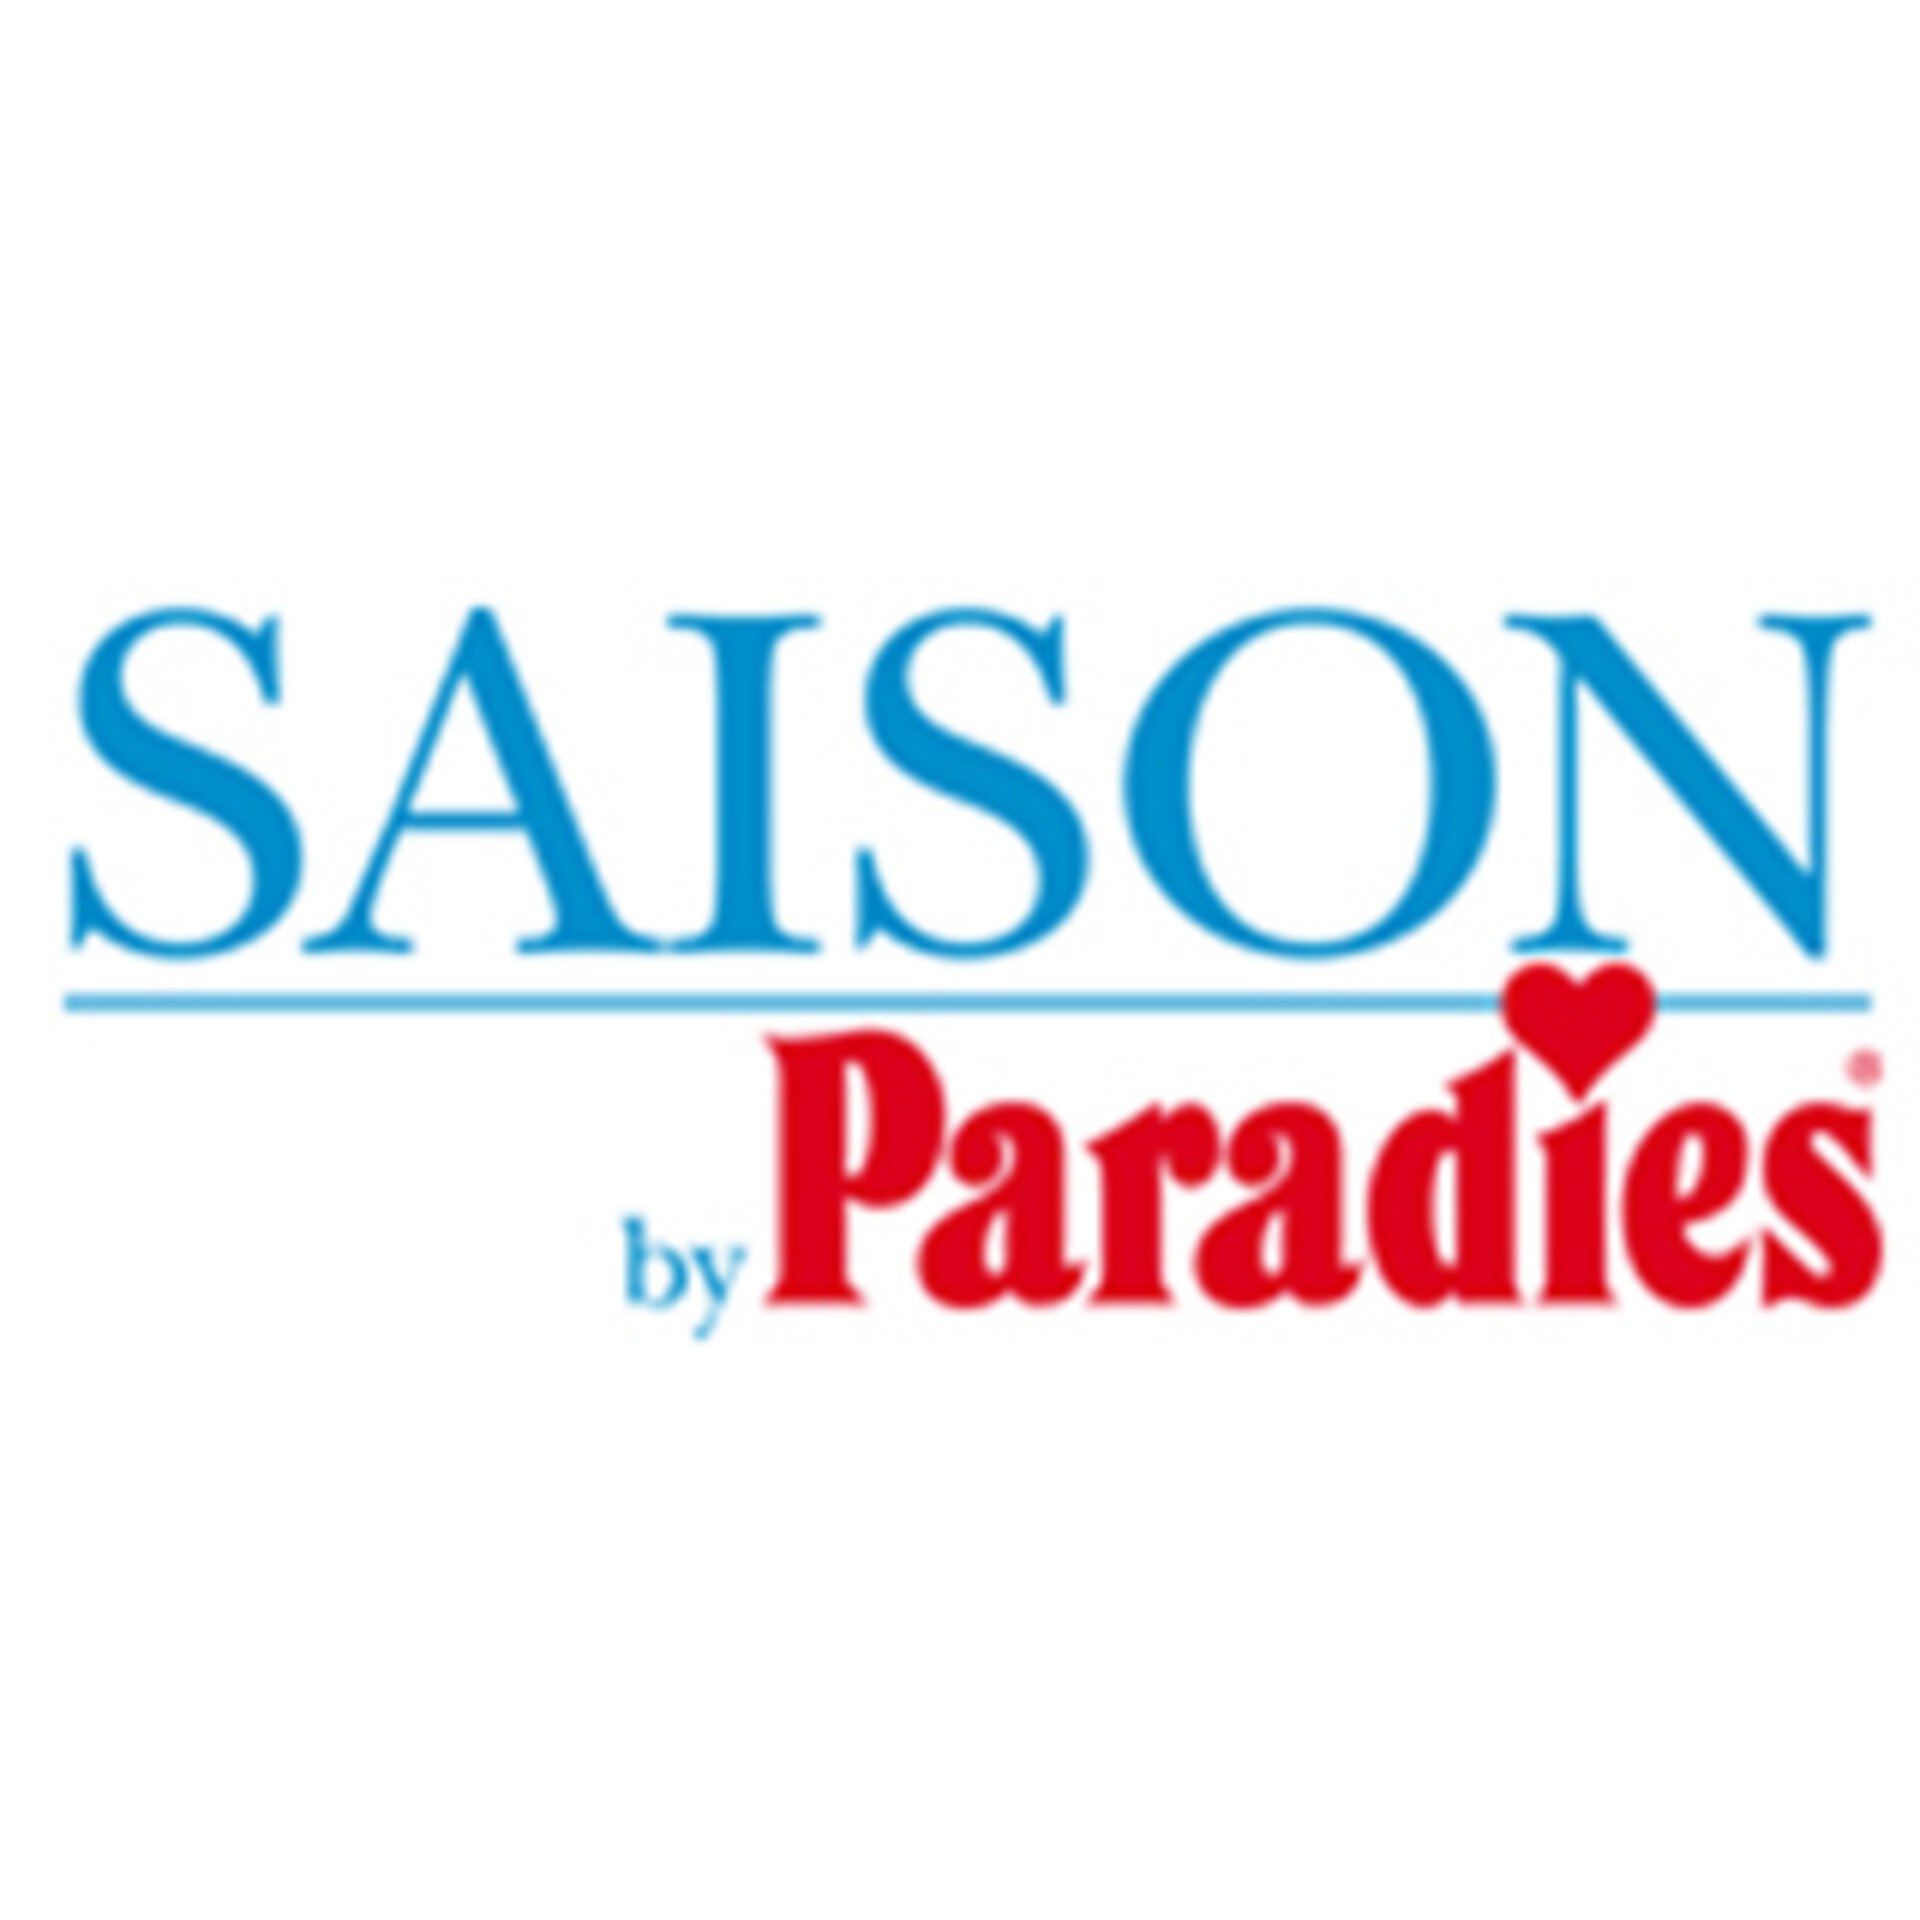 Logo "SAISON by Paradies"